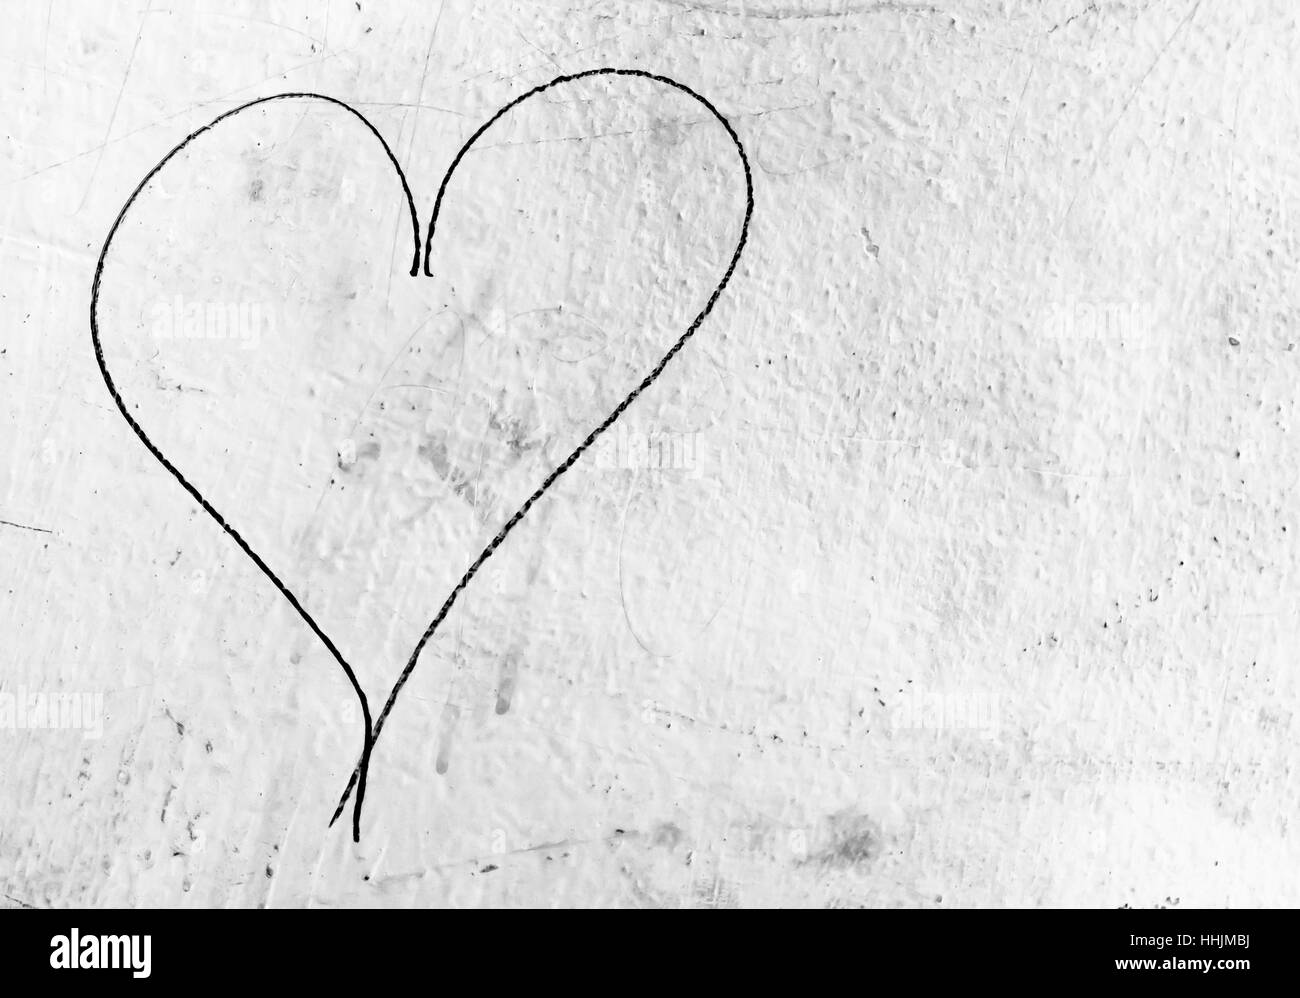 Konzept oder konzeptionelle gemalten schwarzen abstrakte Herzen Formen Liebe Symbol, schmutzigen Wand Hintergrund, Metapher, Stadt- und romantischen Valentinstag, Grunge-Stil. Stockfoto